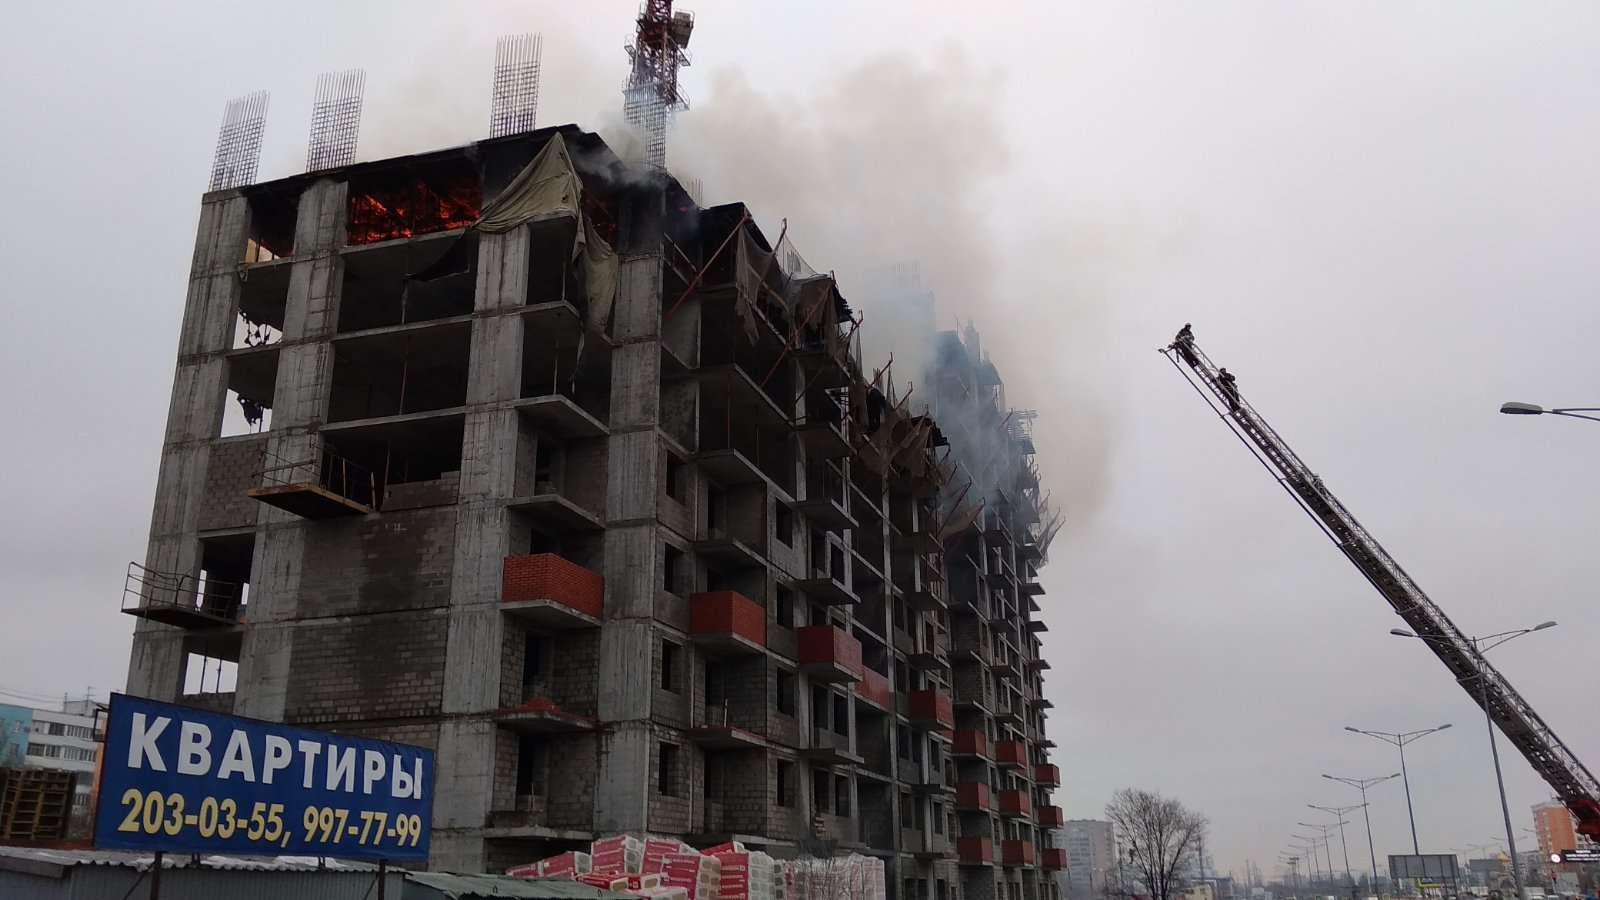 Со стройки на Димитрова из-за пожара эвакуировали рабочих